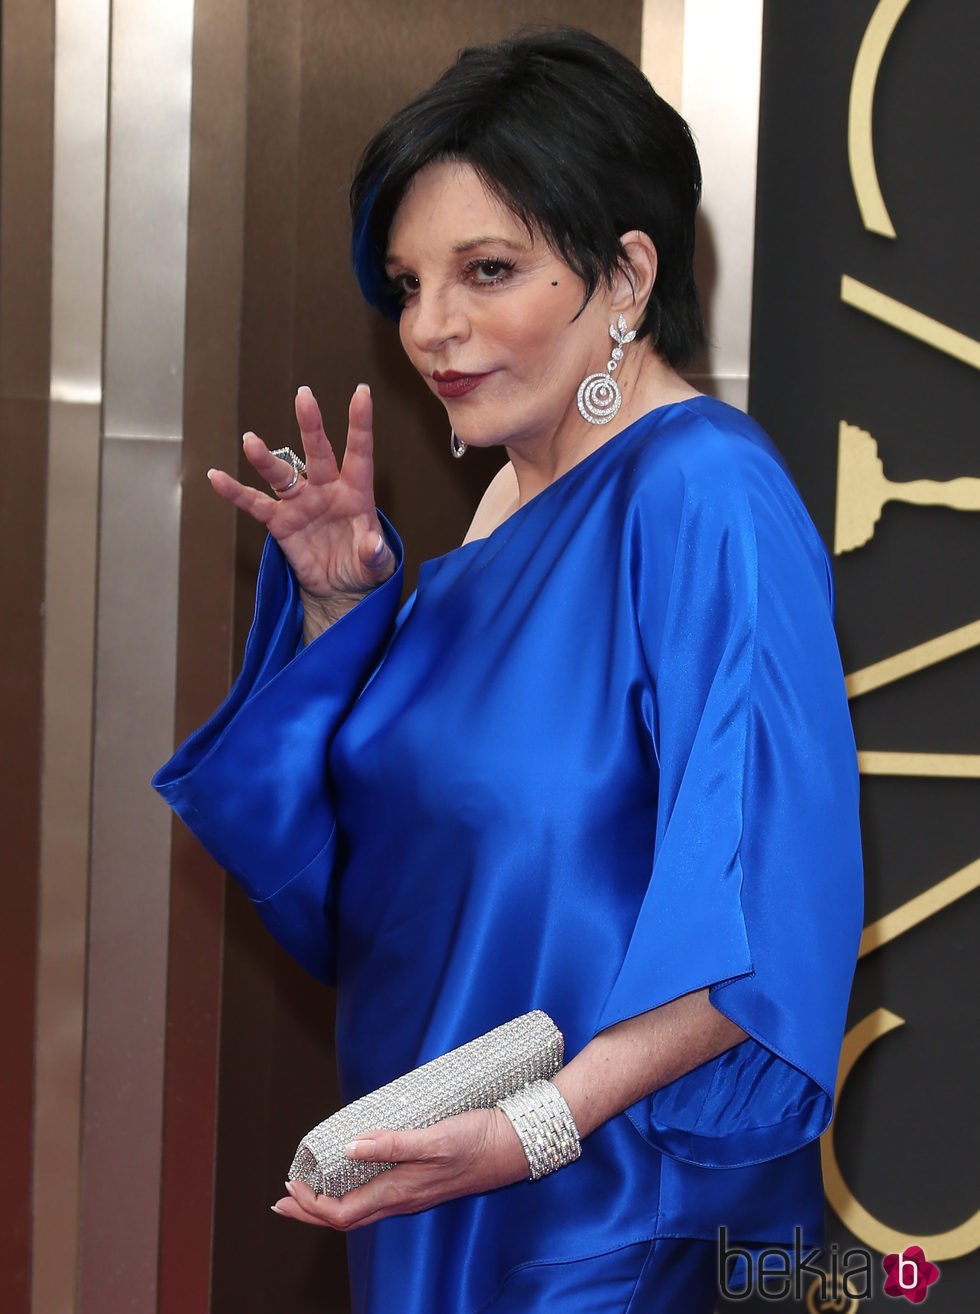 Liza Minelli en la polémica alfombra roja de los Premios Oscar 2014